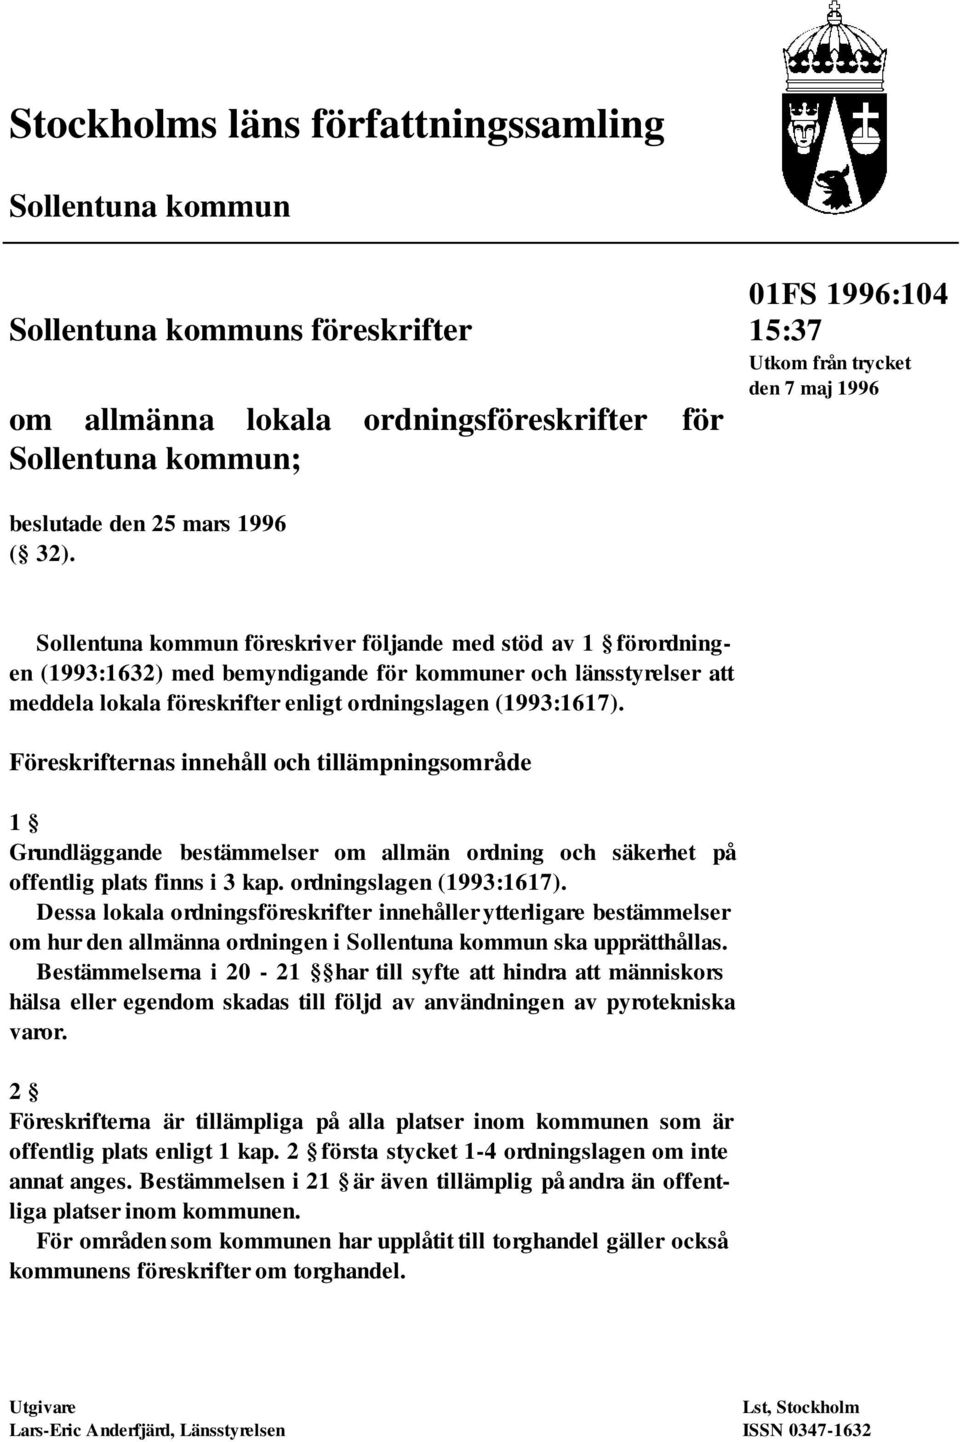 Sollentuna kommun föreskriver följande med stöd av 1 förordningen (1993:1632) med bemyndigande för kommuner och länsstyrelser att meddela lokala föreskrifter enligt ordningslagen (1993:1617).